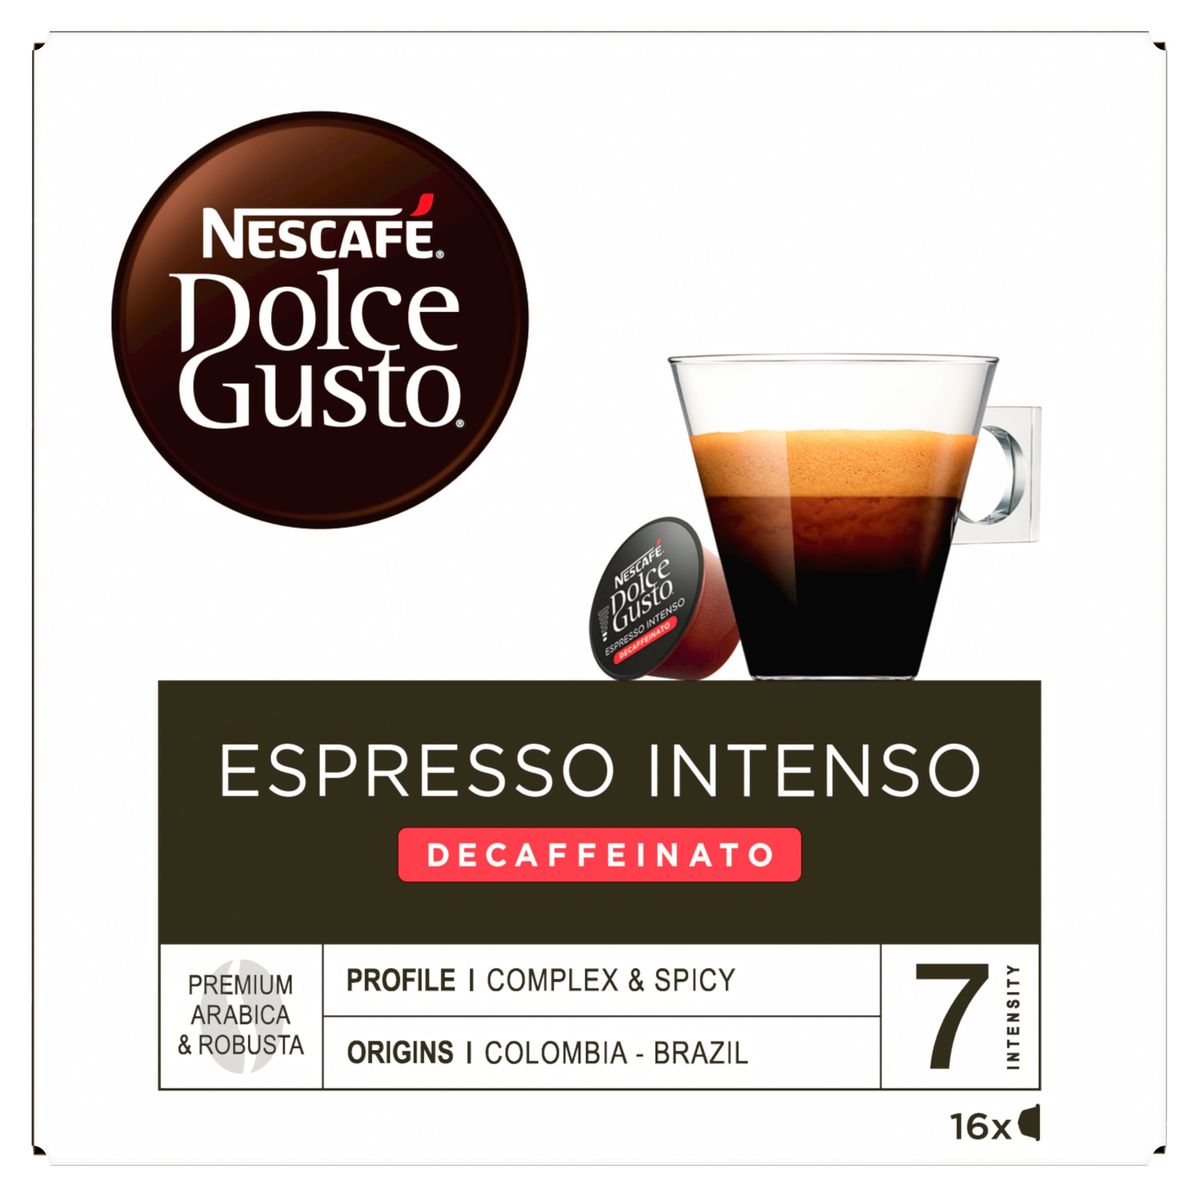 Nescafé Dolce Gusto Espresso Intenso Decaffeinato 16 x 6.2 g